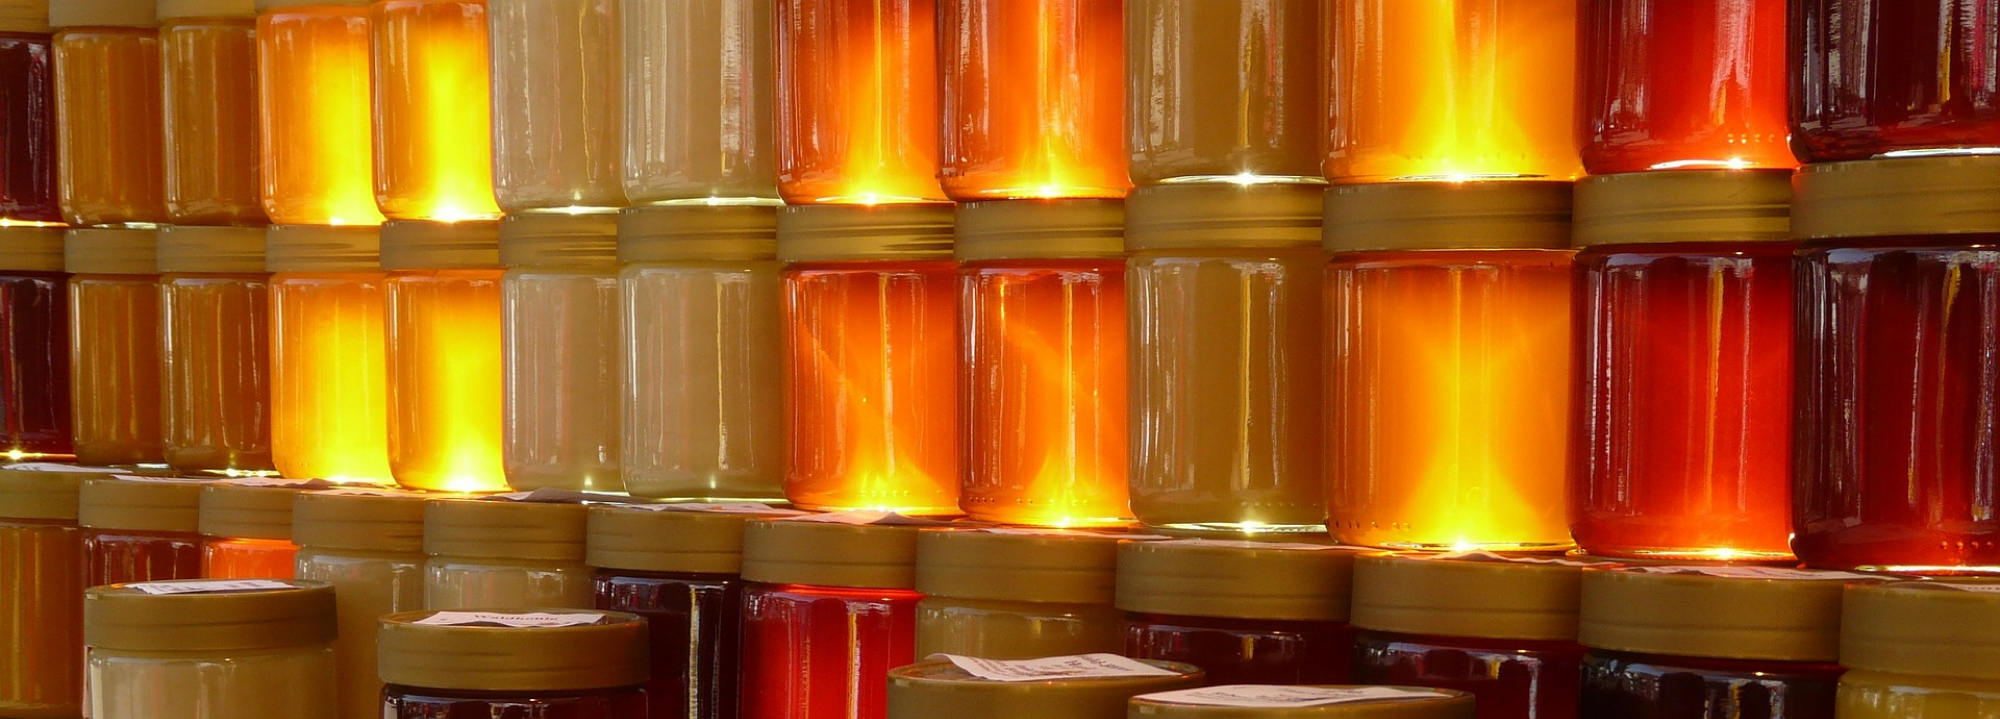 Цена на мёд в Украине на начало лета 2022 года